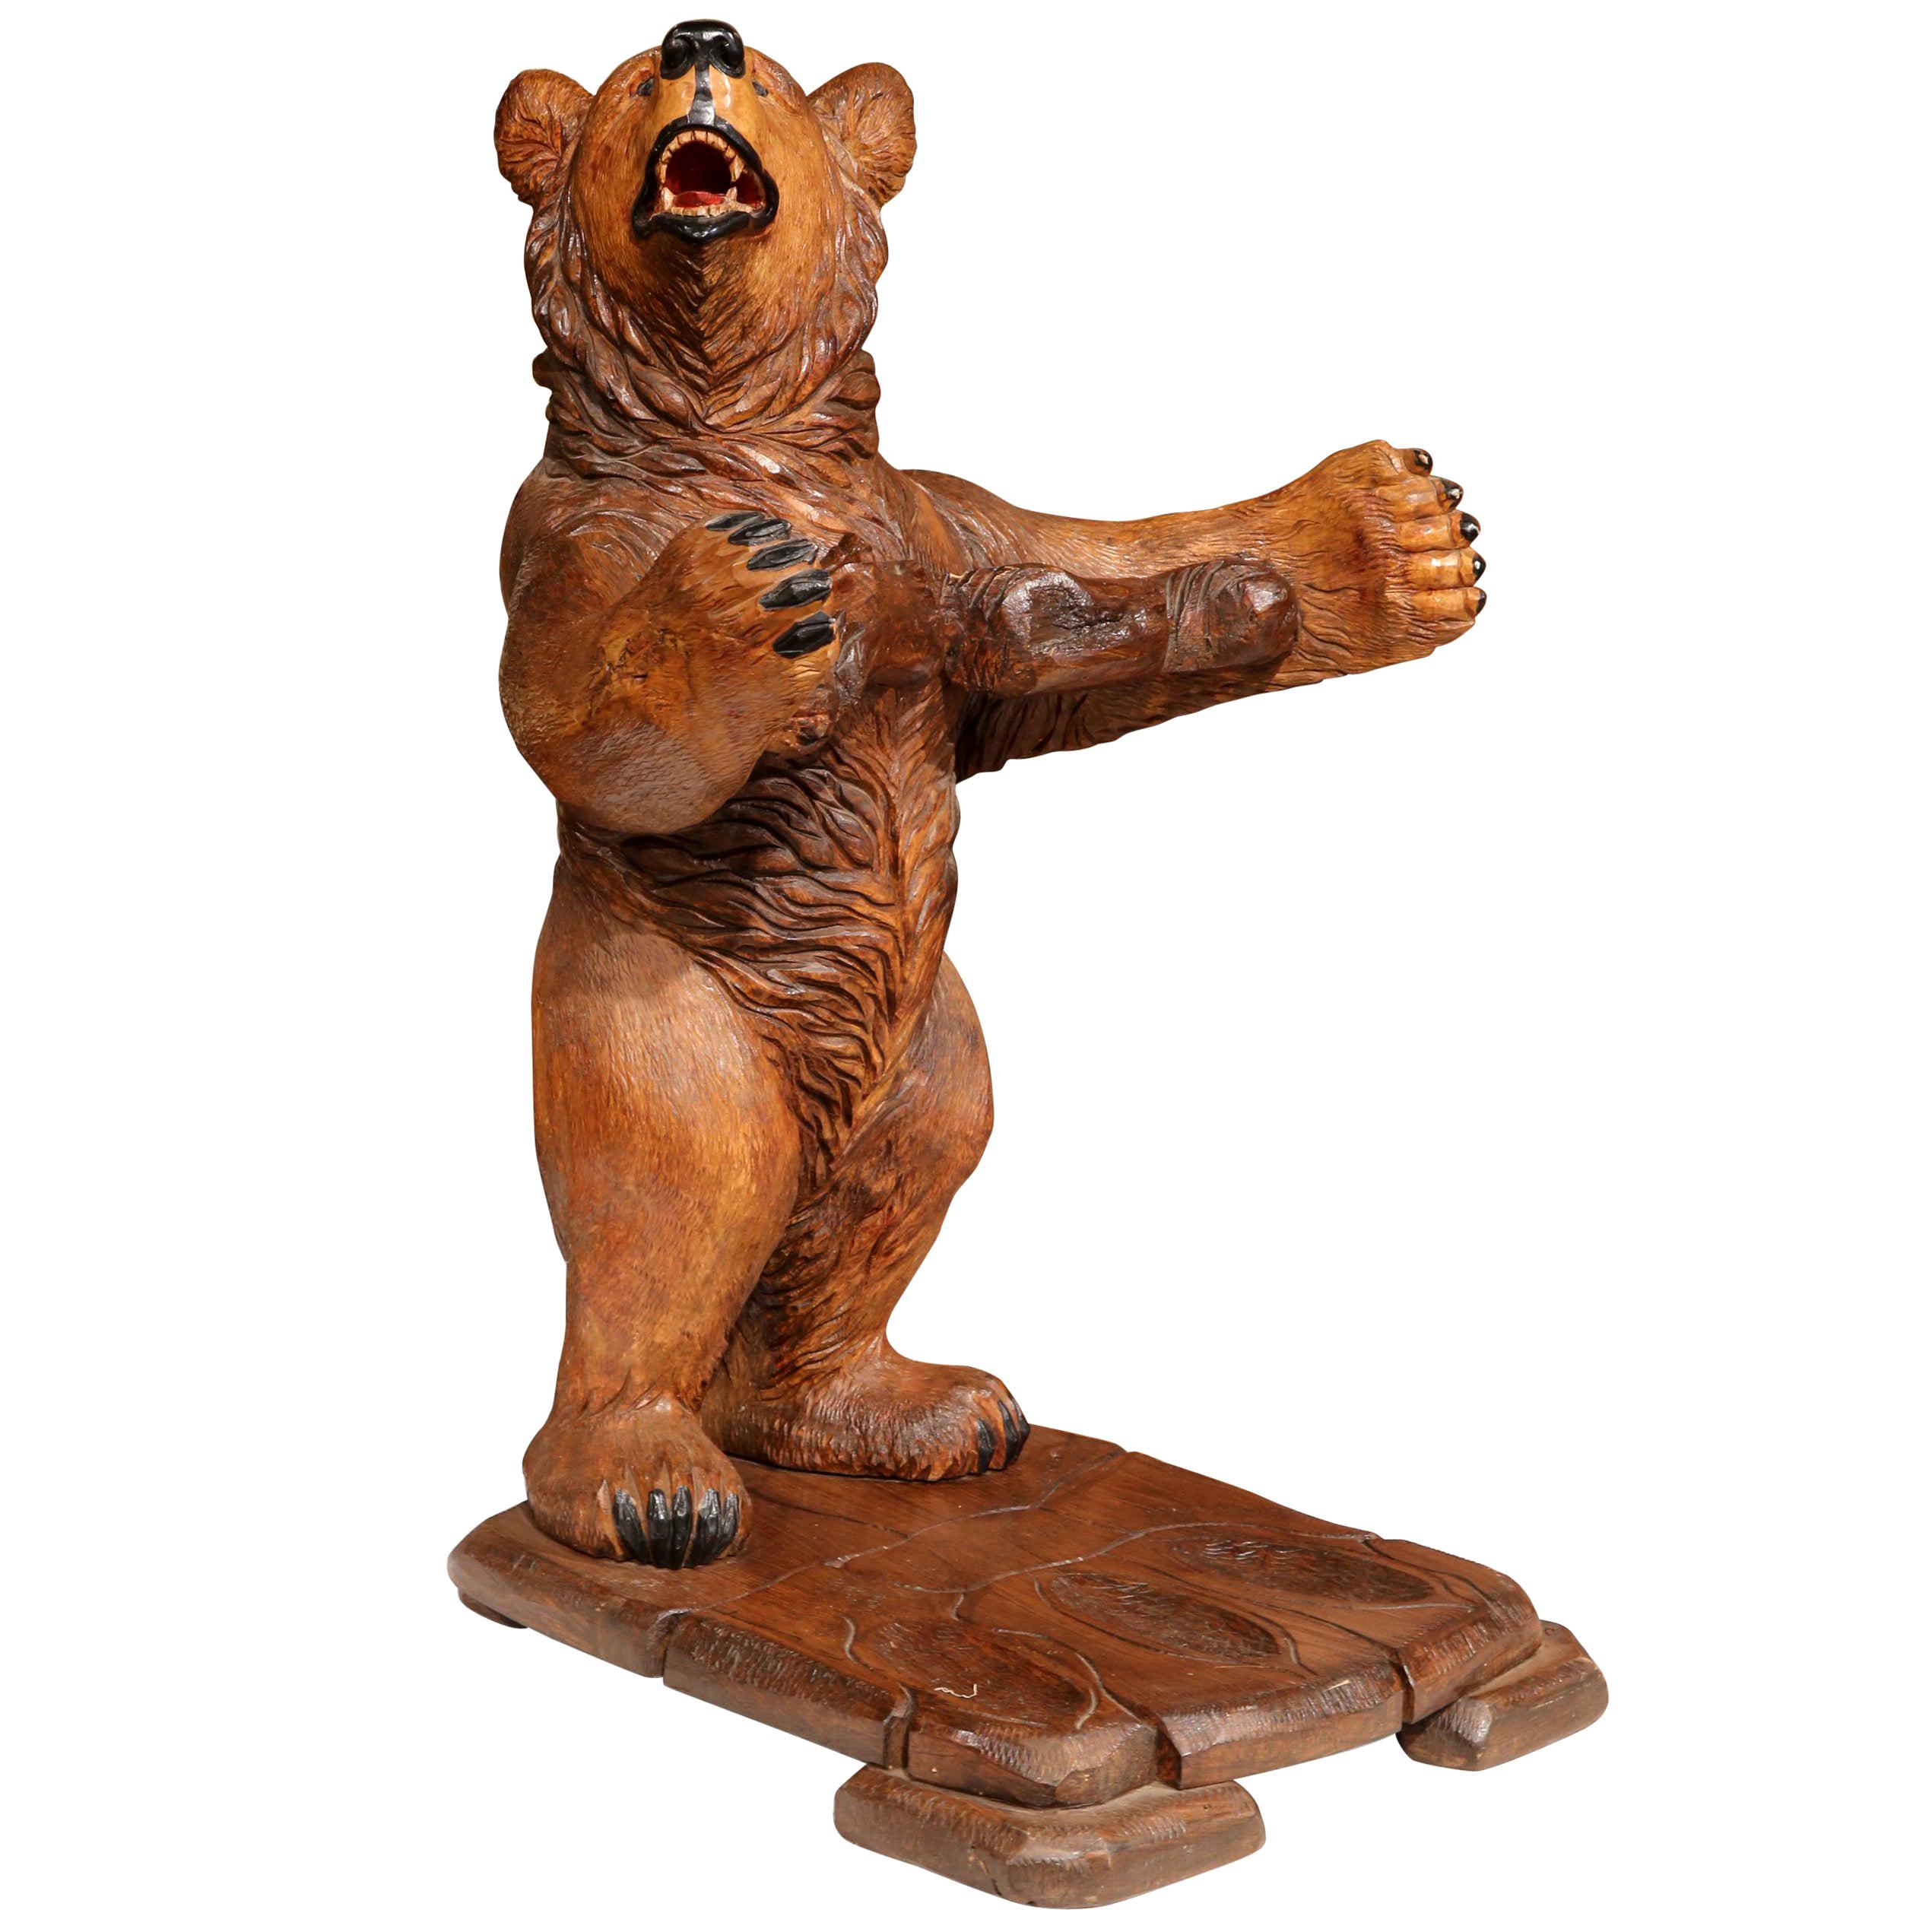 Cet intéressant porte-fusil ancien a été sculpté en France, vers 1920. La sculpture en chêne représente un jeune ours debout, les bras ouverts. La figurine animale en bois a un visage expressif et une texture détaillée sur tout le corps. Cette pièce